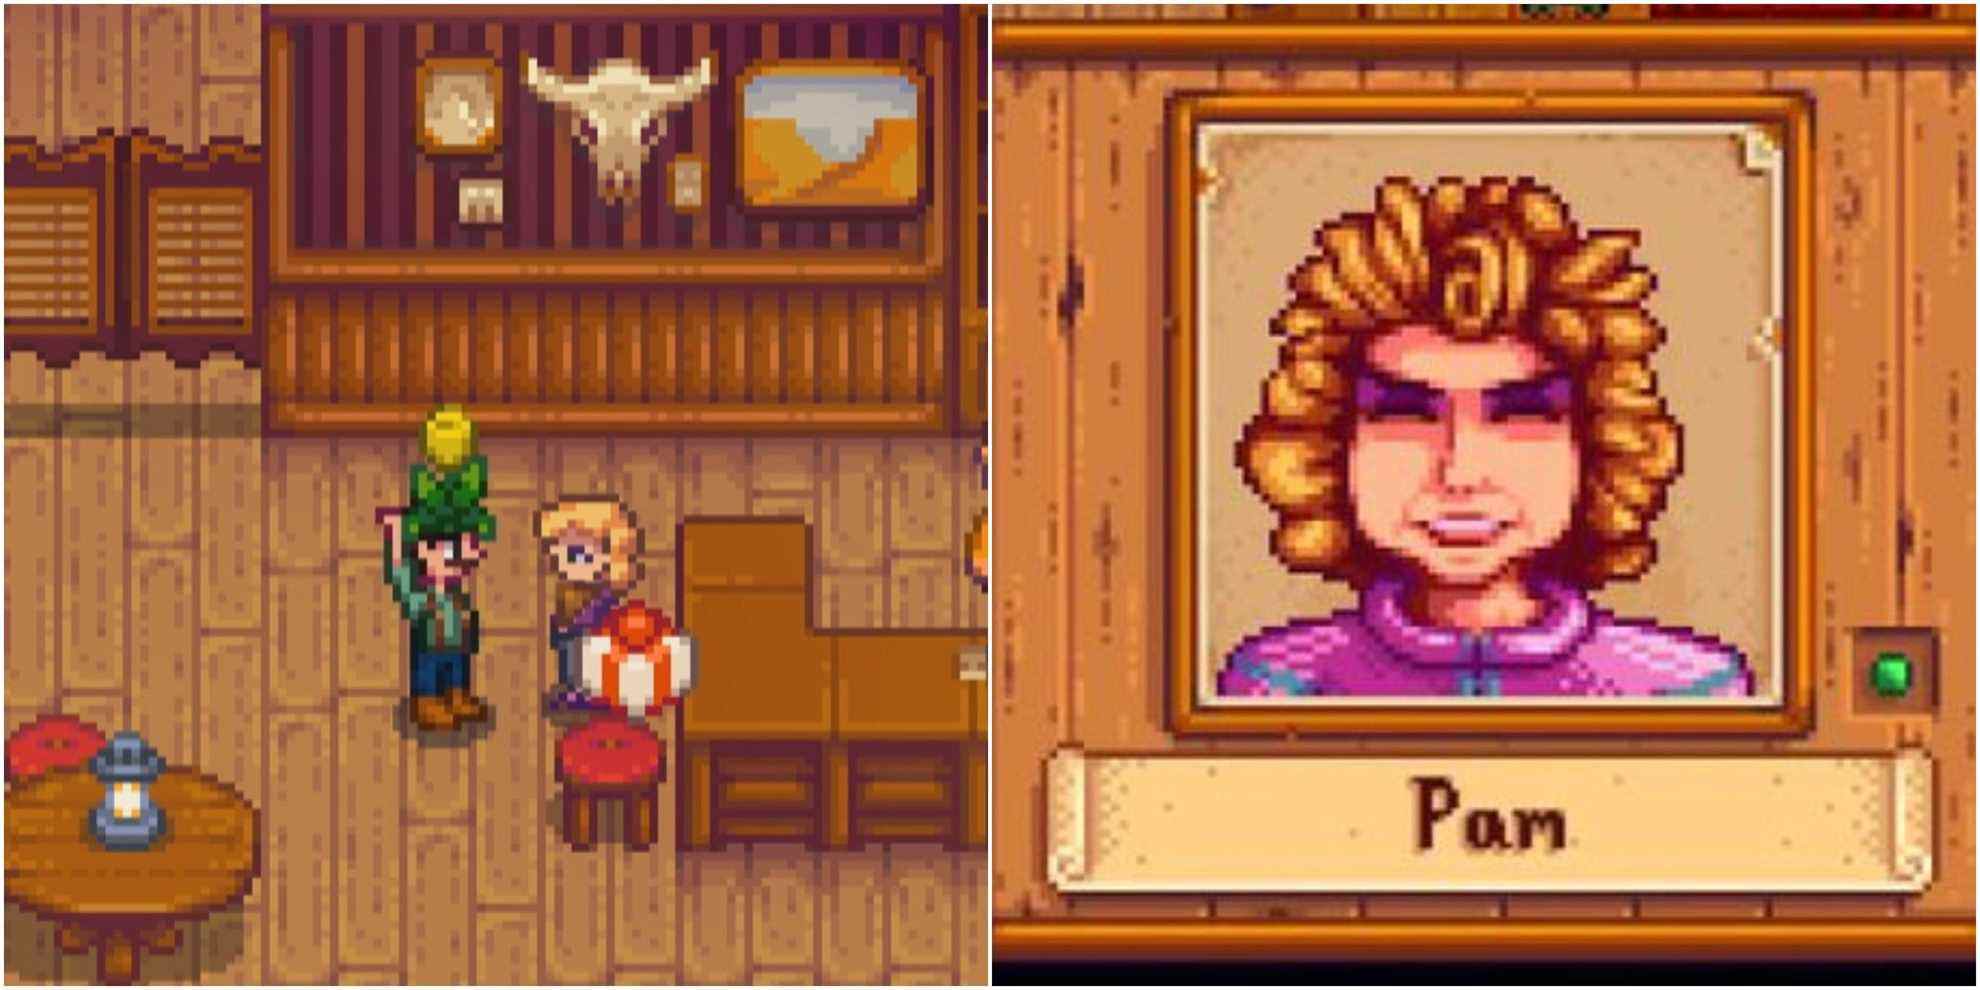 gauche : joueur donnant un cadeau à pam ;  à droite : le portrait souriant de Pam